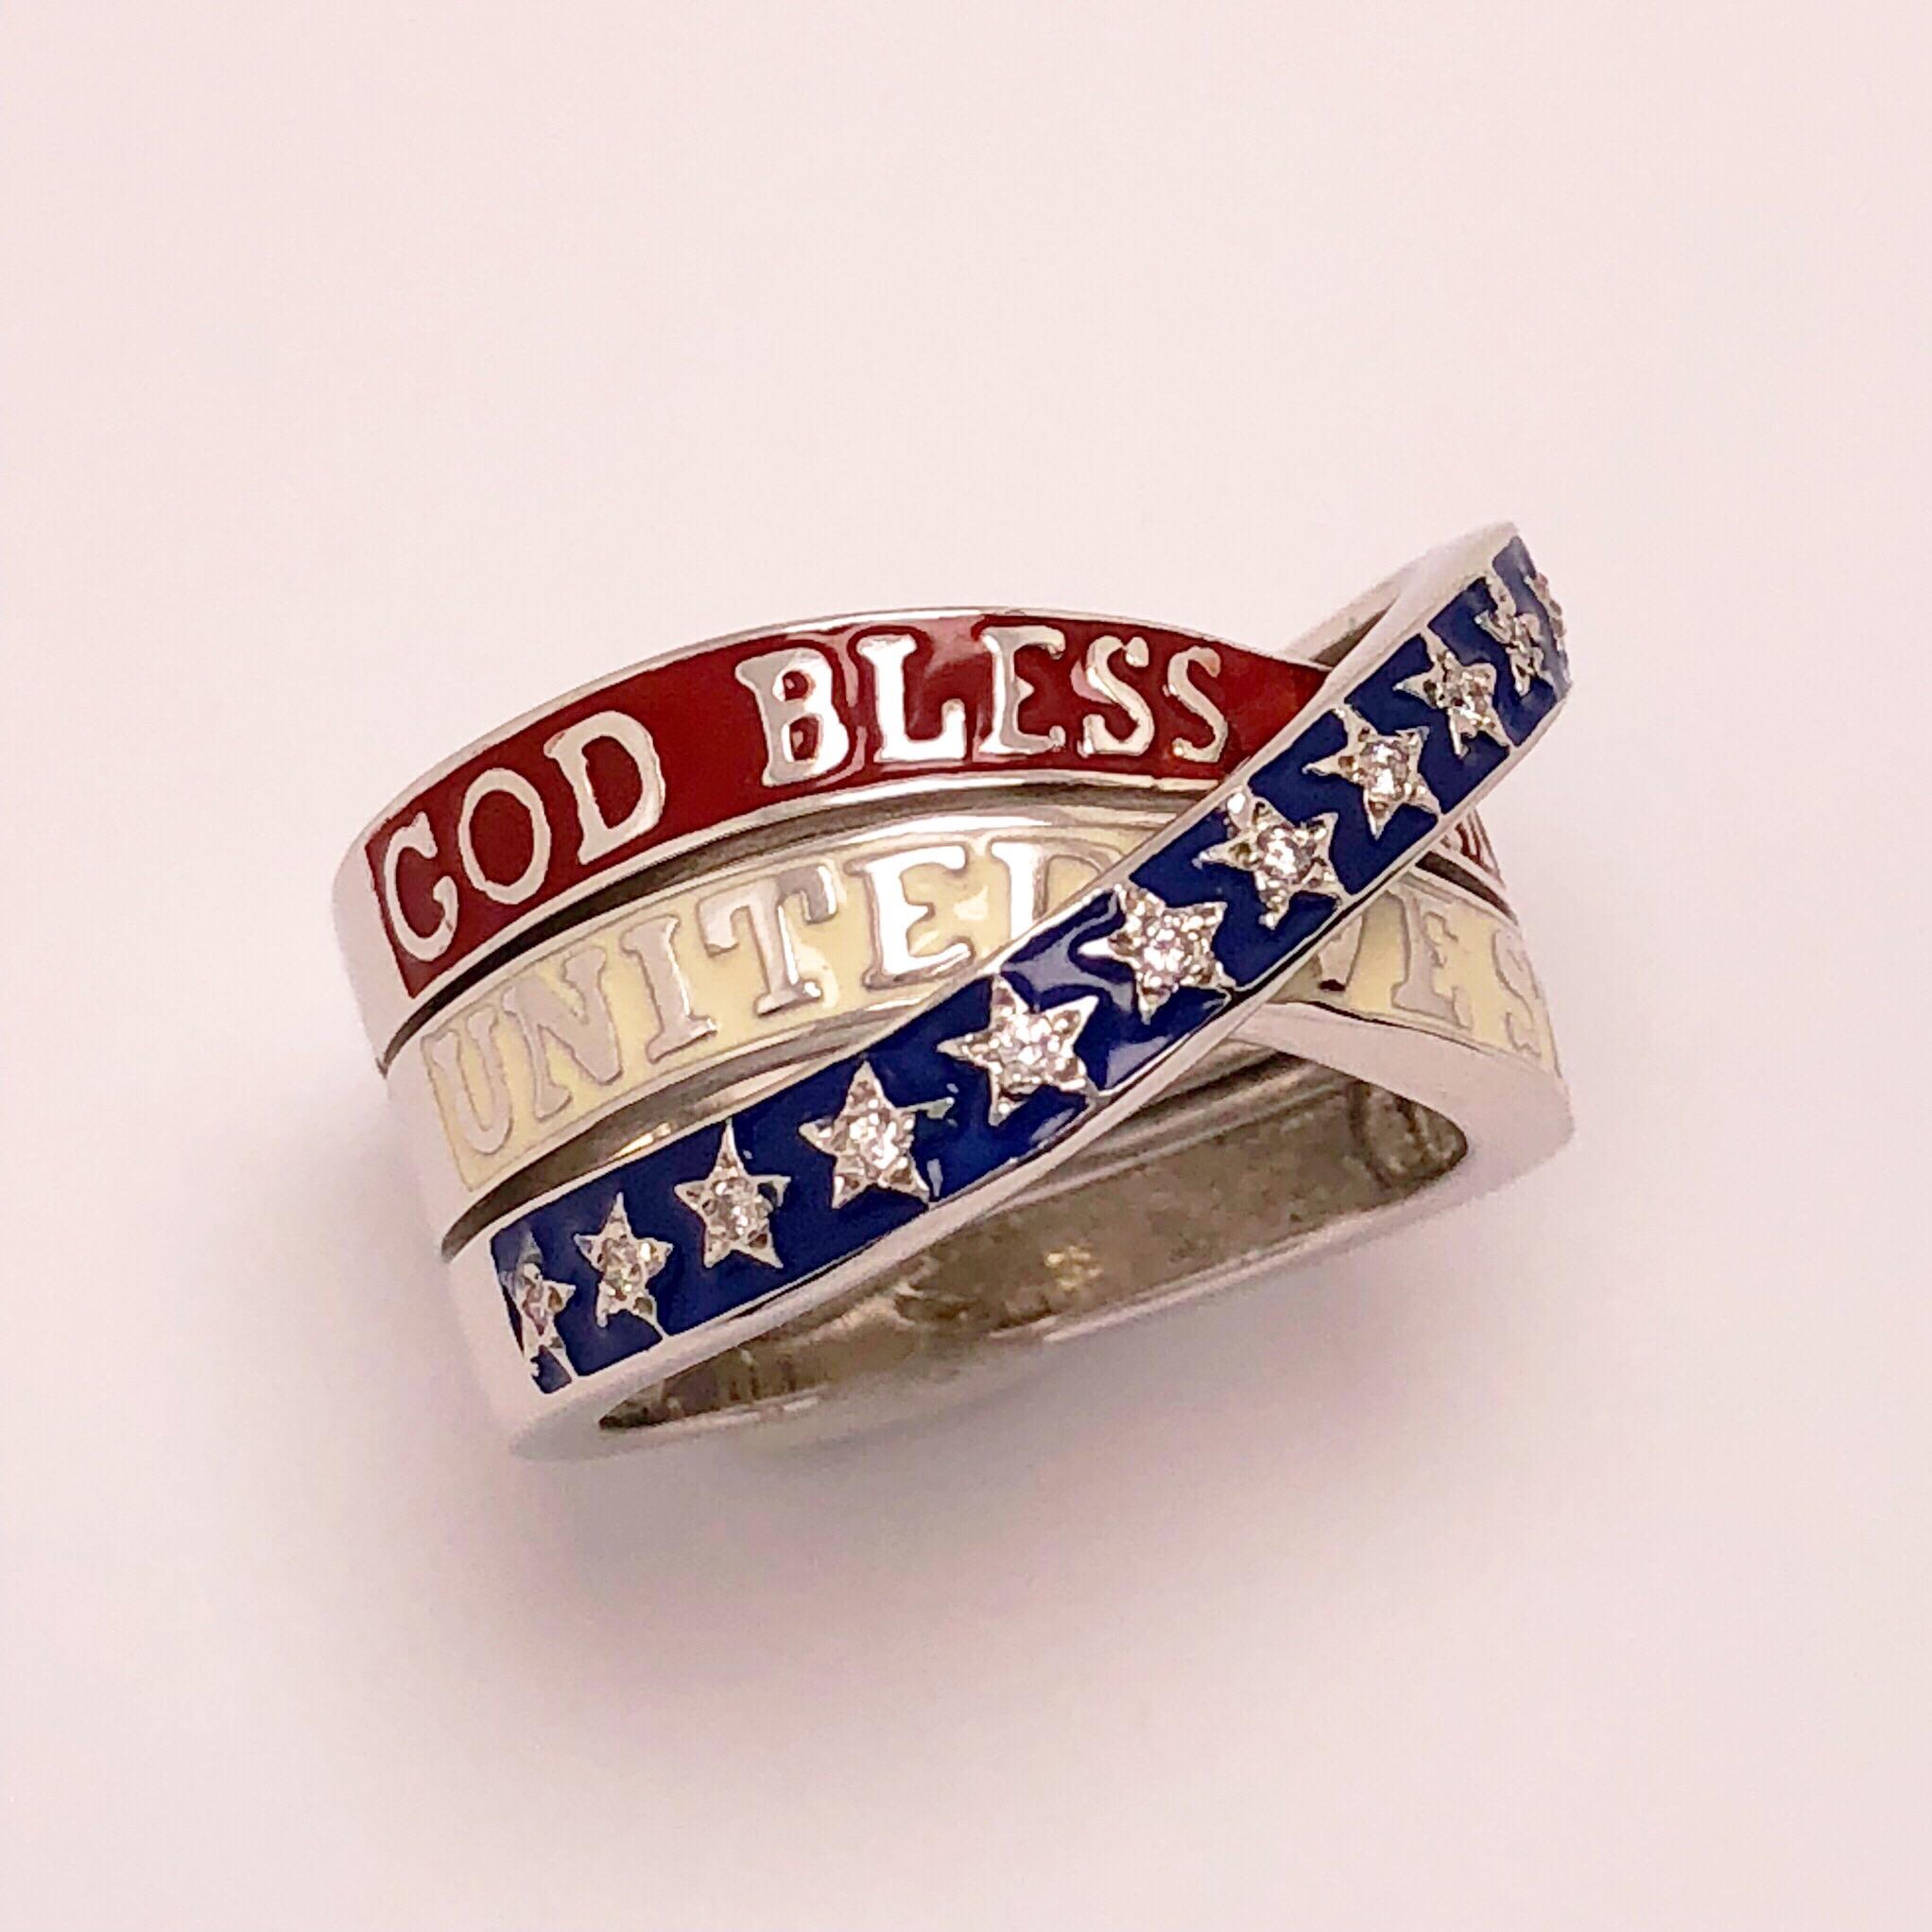 god bless america ring